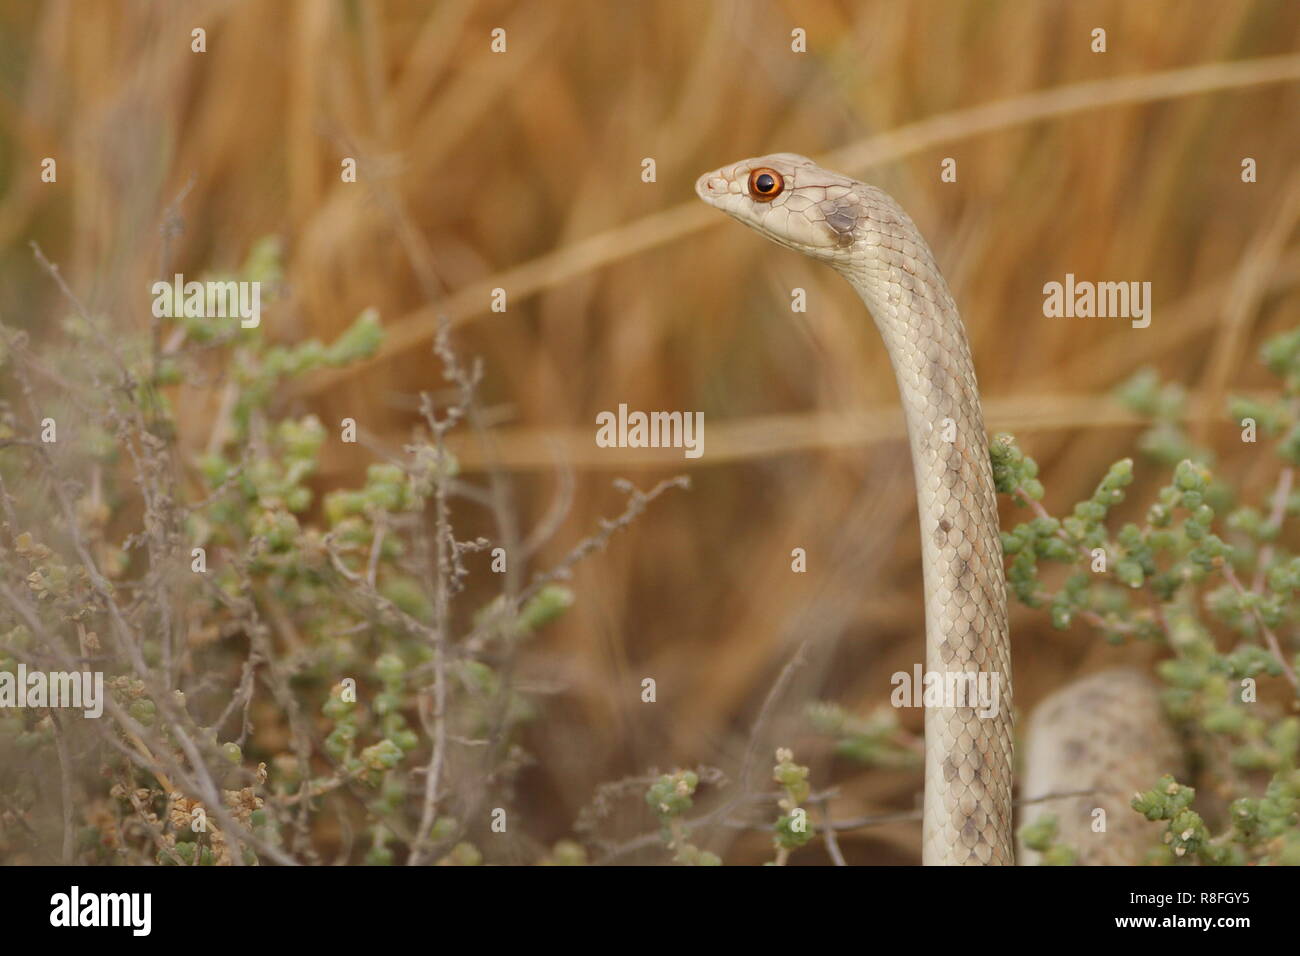 Alarmed false cobra Aka hooded malpolon .. a common snake living in the Arabian desert Stock Photo